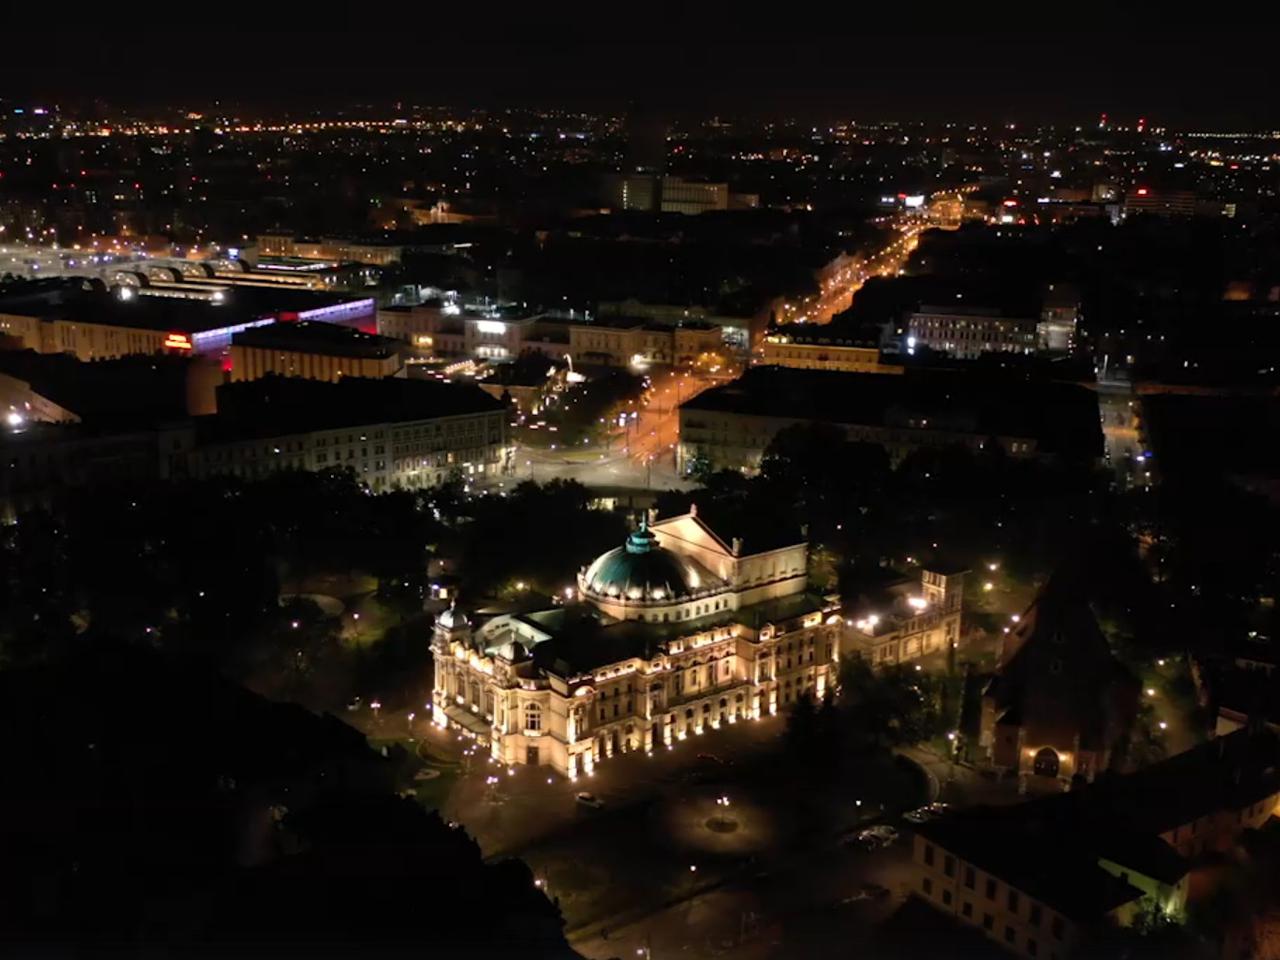 Koniec egipskich ciemności w Krakowie! Oświetlenie całonocne wraca do miasta